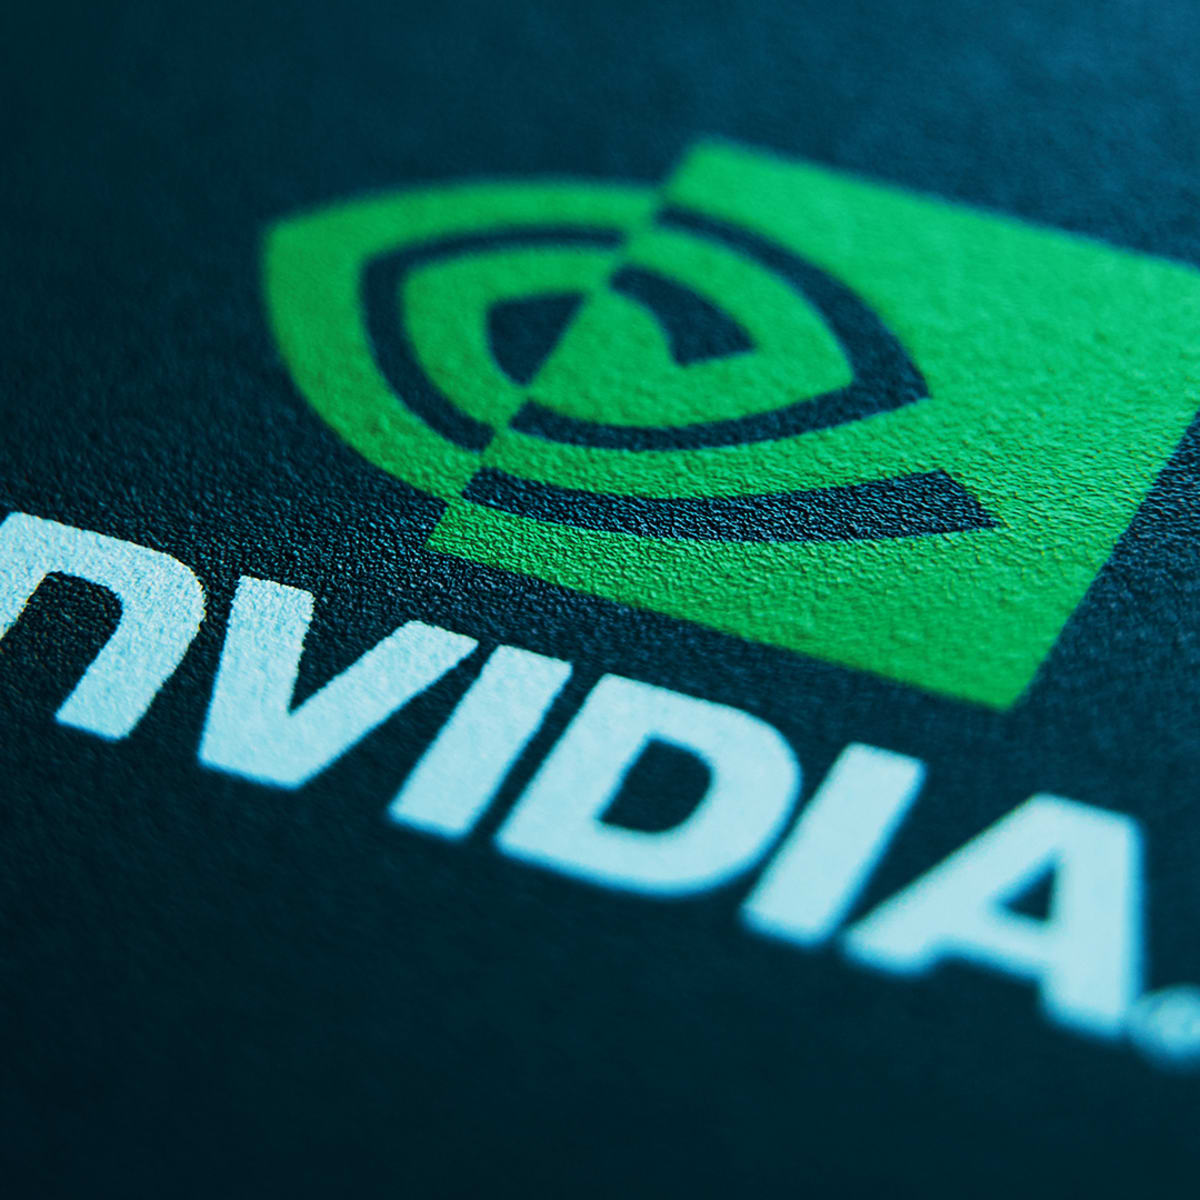 AMD NVIDIA. NVDA. Nvidia up